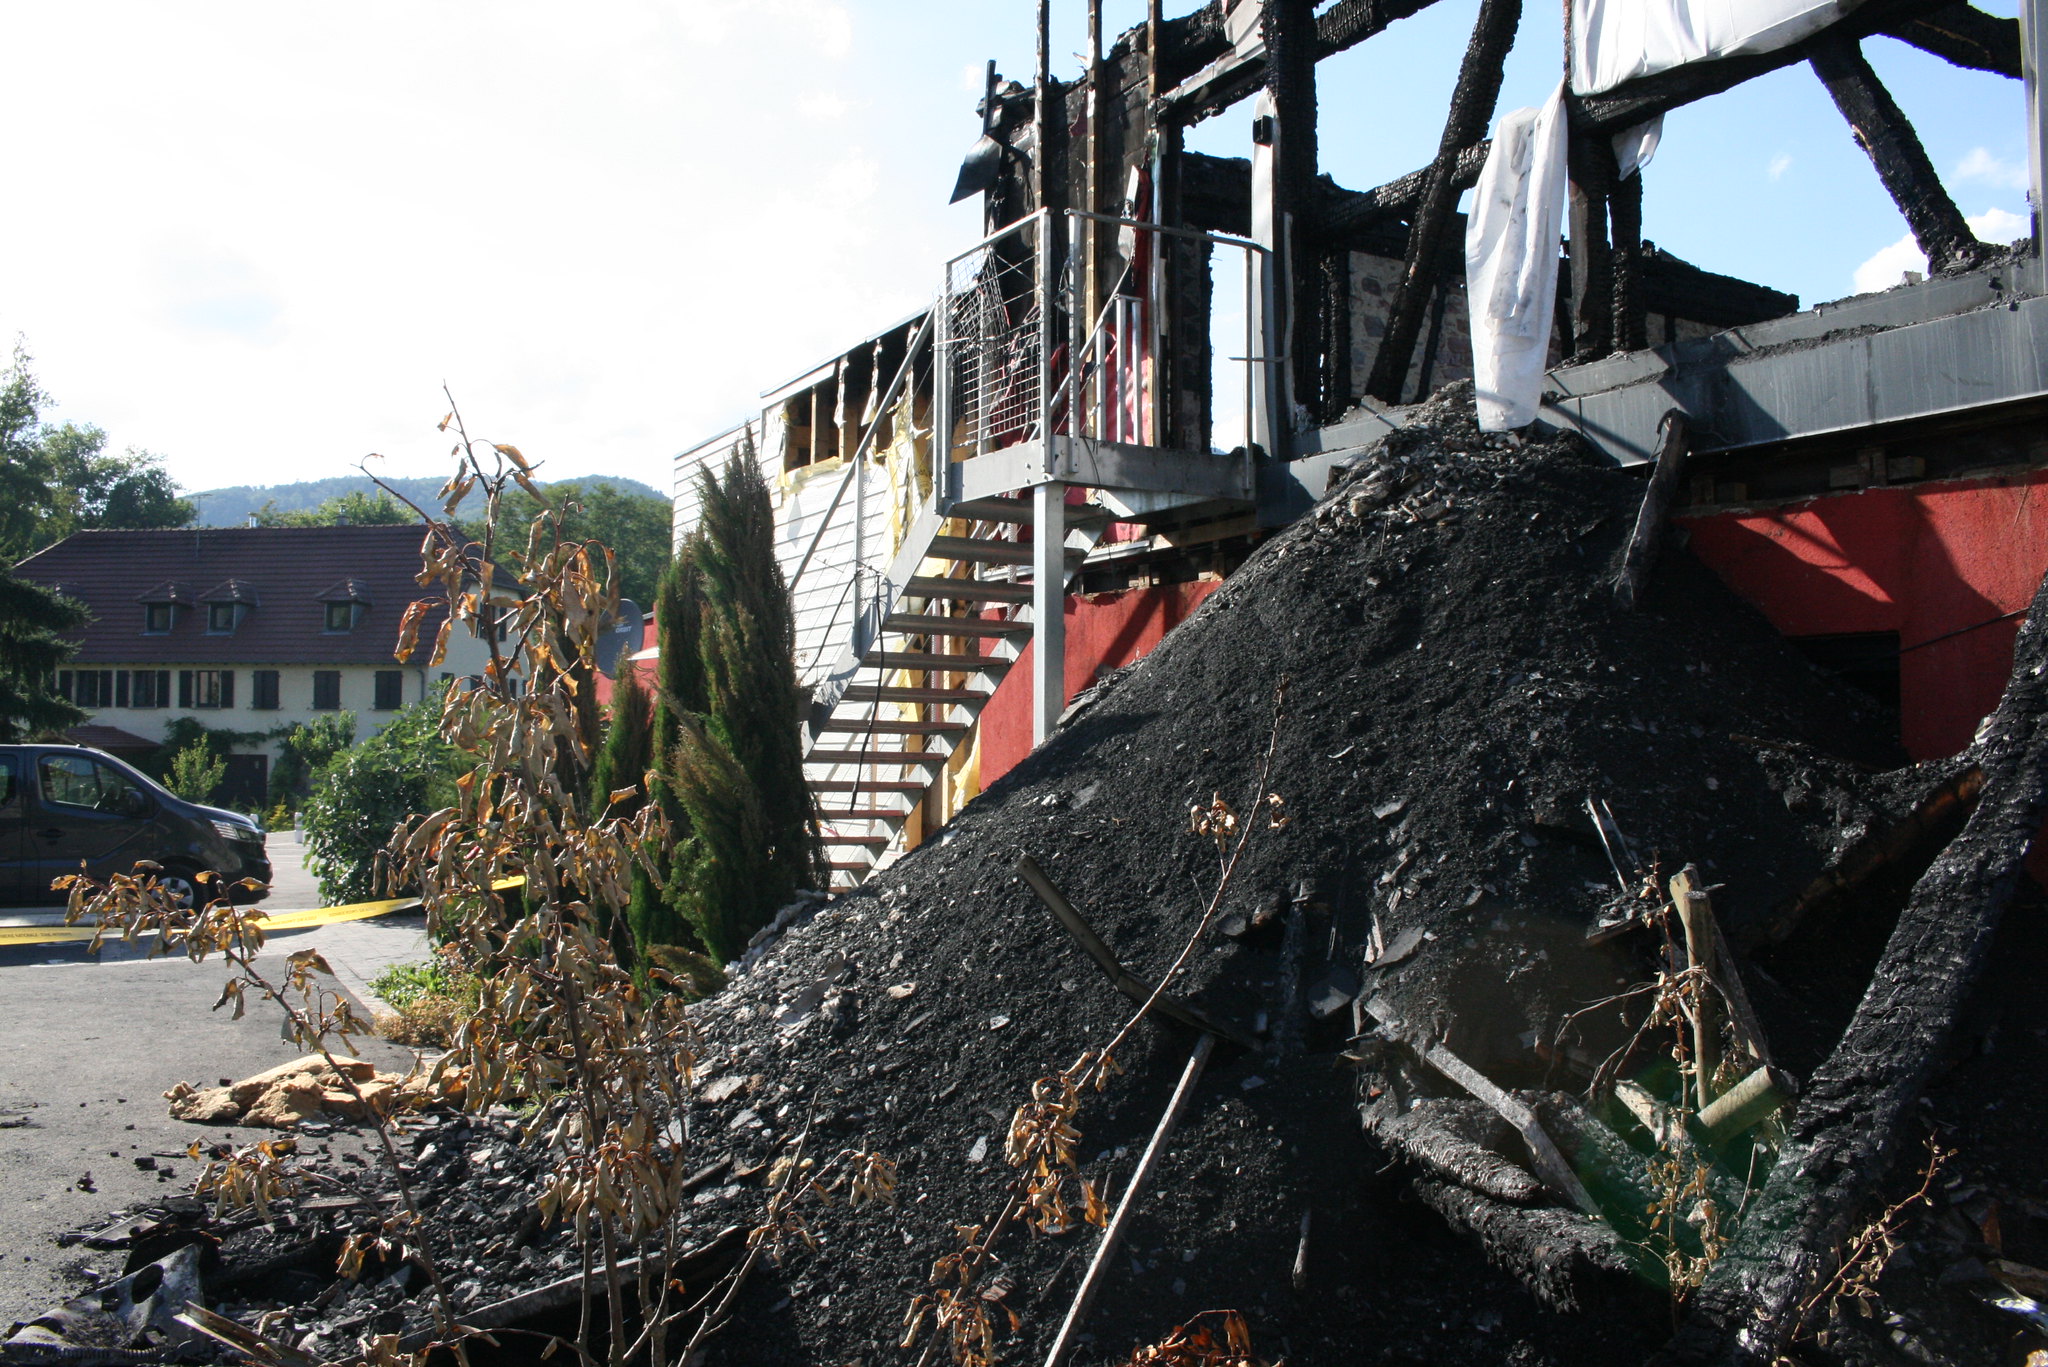 Incendie à Wintzenheim : face au sous-effectif et au manque de formation, Emie a démissionné d’Oxygène